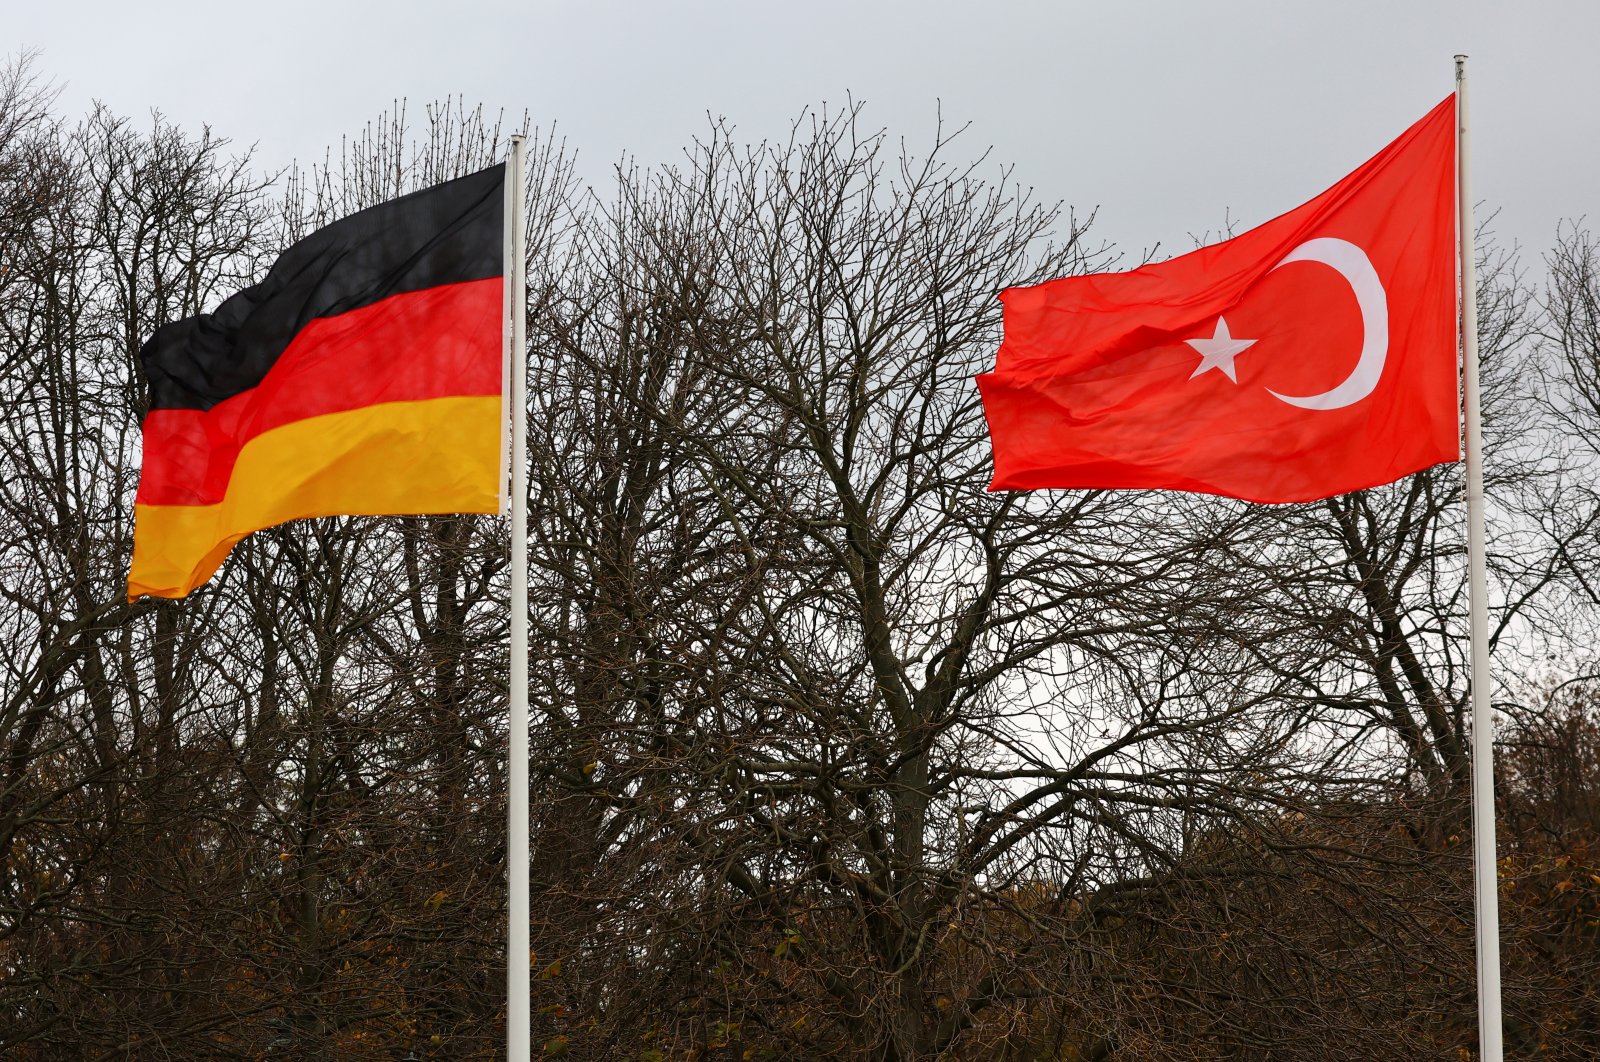 Türkiye und Deutschland sondieren in Sonderveranstaltung wirtschaftliches Potenzial